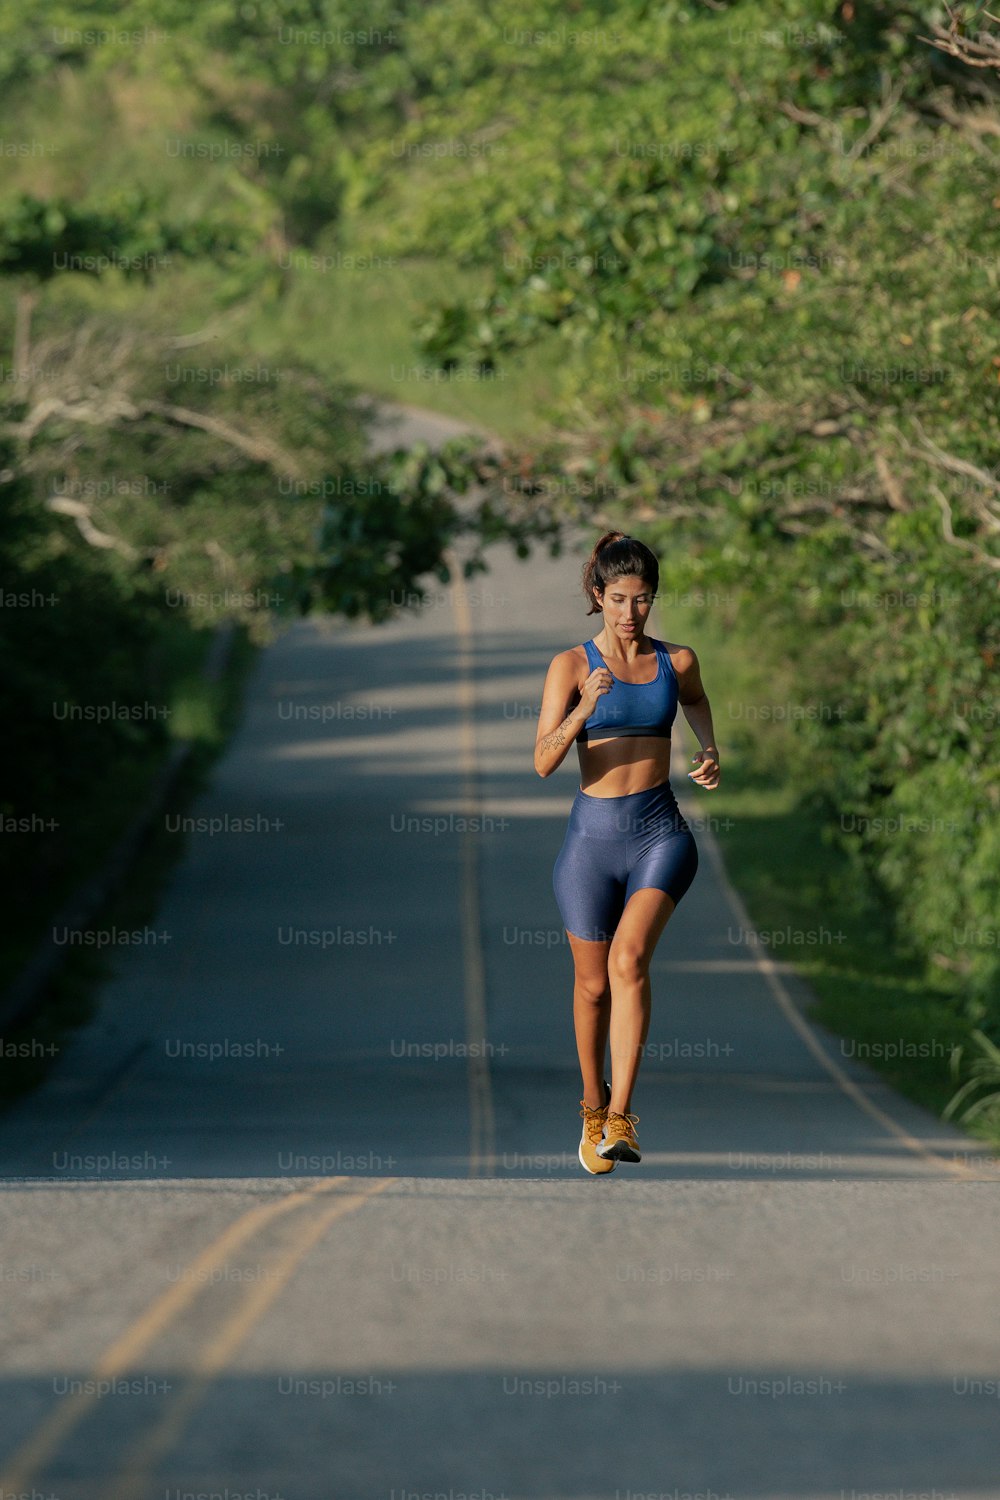 Una mujer corriendo por una carretera con árboles en el fondo